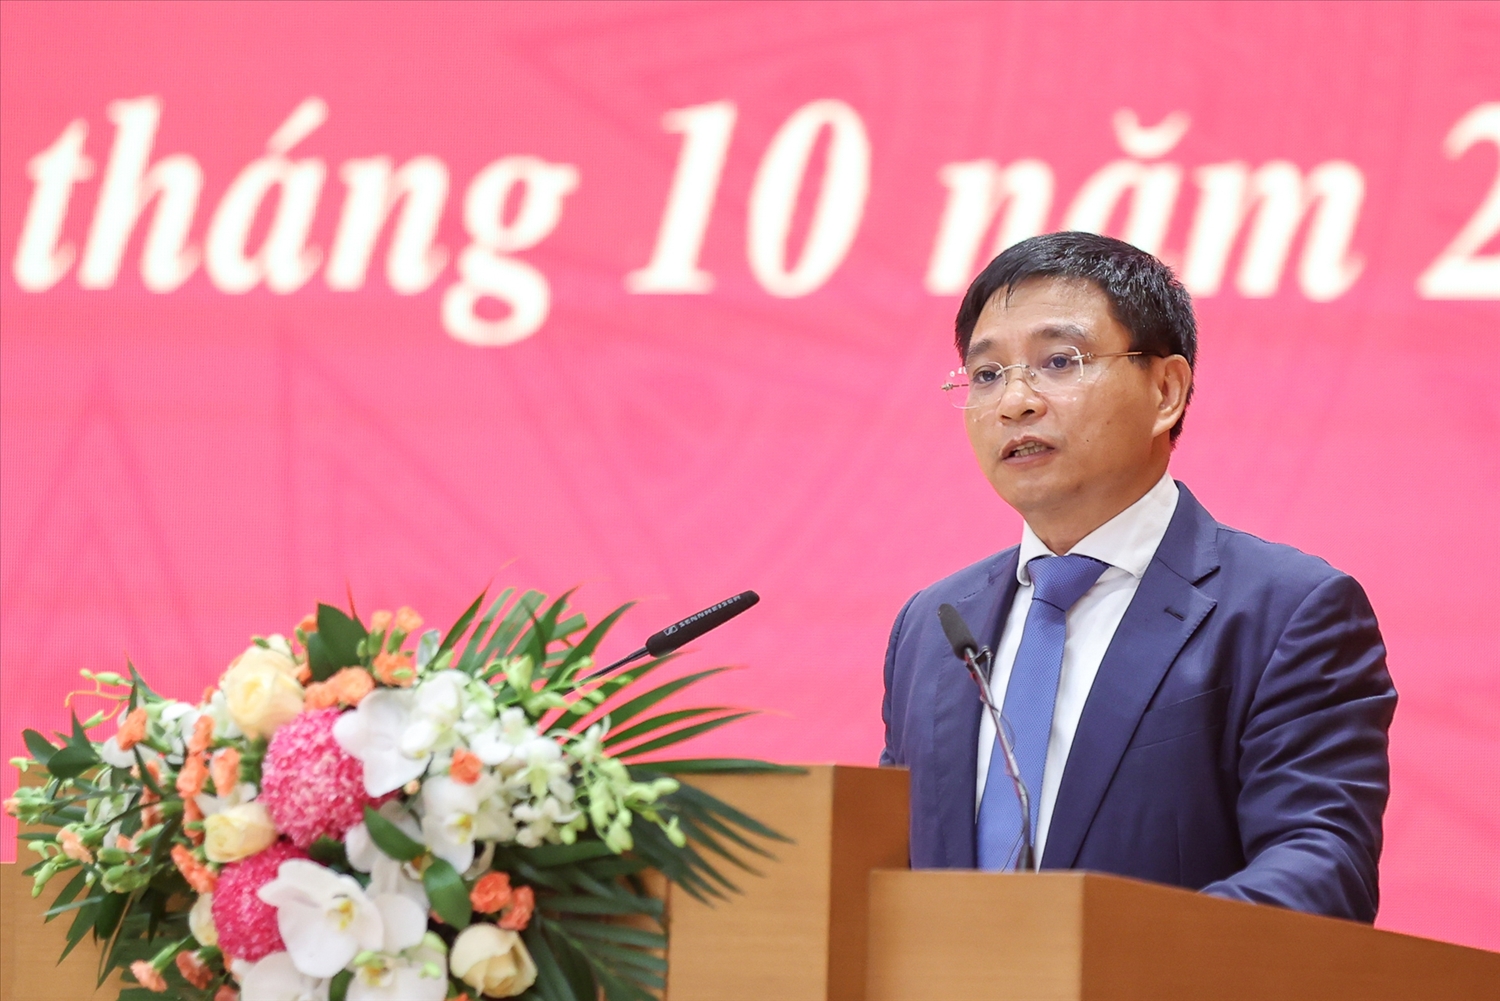 Bộ trưởng Nguyễn Văn Thắng chia sẻ, thời gian tới, ngành sẽ tập trung khắc phục, sửa chữa các công trình bị ảnh hưởng bởi thiên tai thời gian qua; triển khai hiệu quả các dự án quan trọng quốc gia - Ảnh: VGP/Nhật Bắc